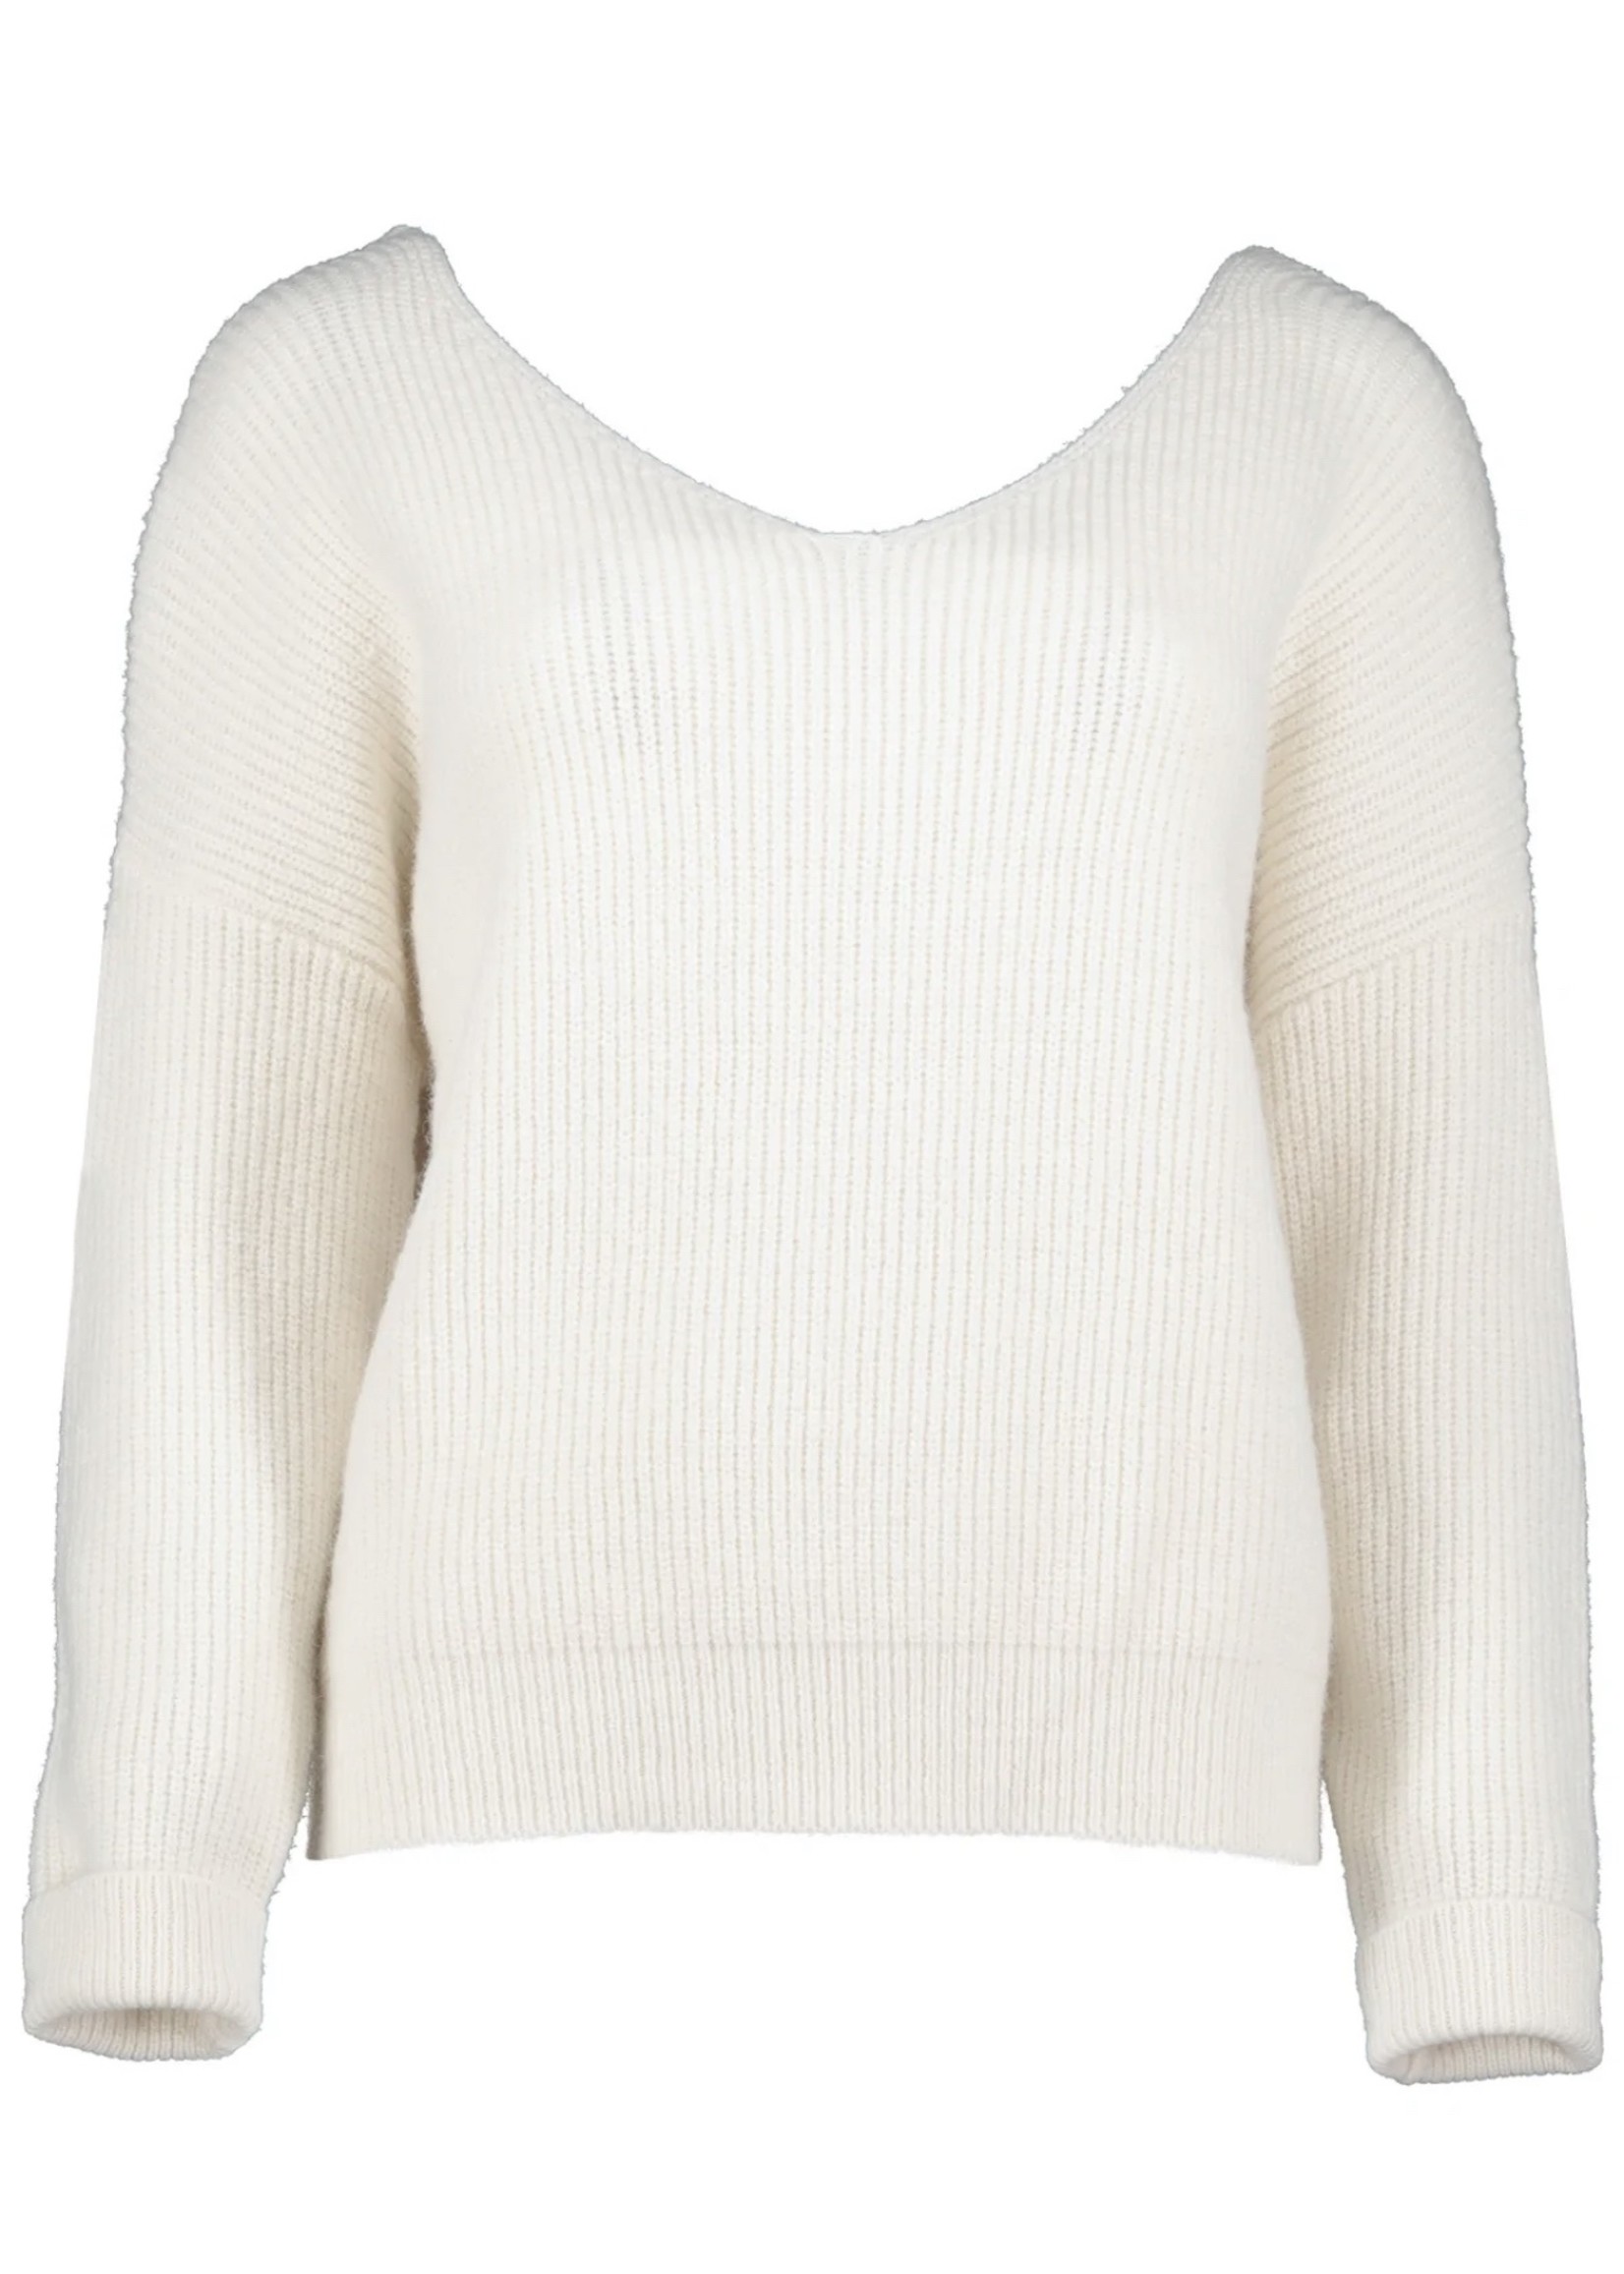 Elitaire Boutique Jocelyn Twist Back Sweater in Cream